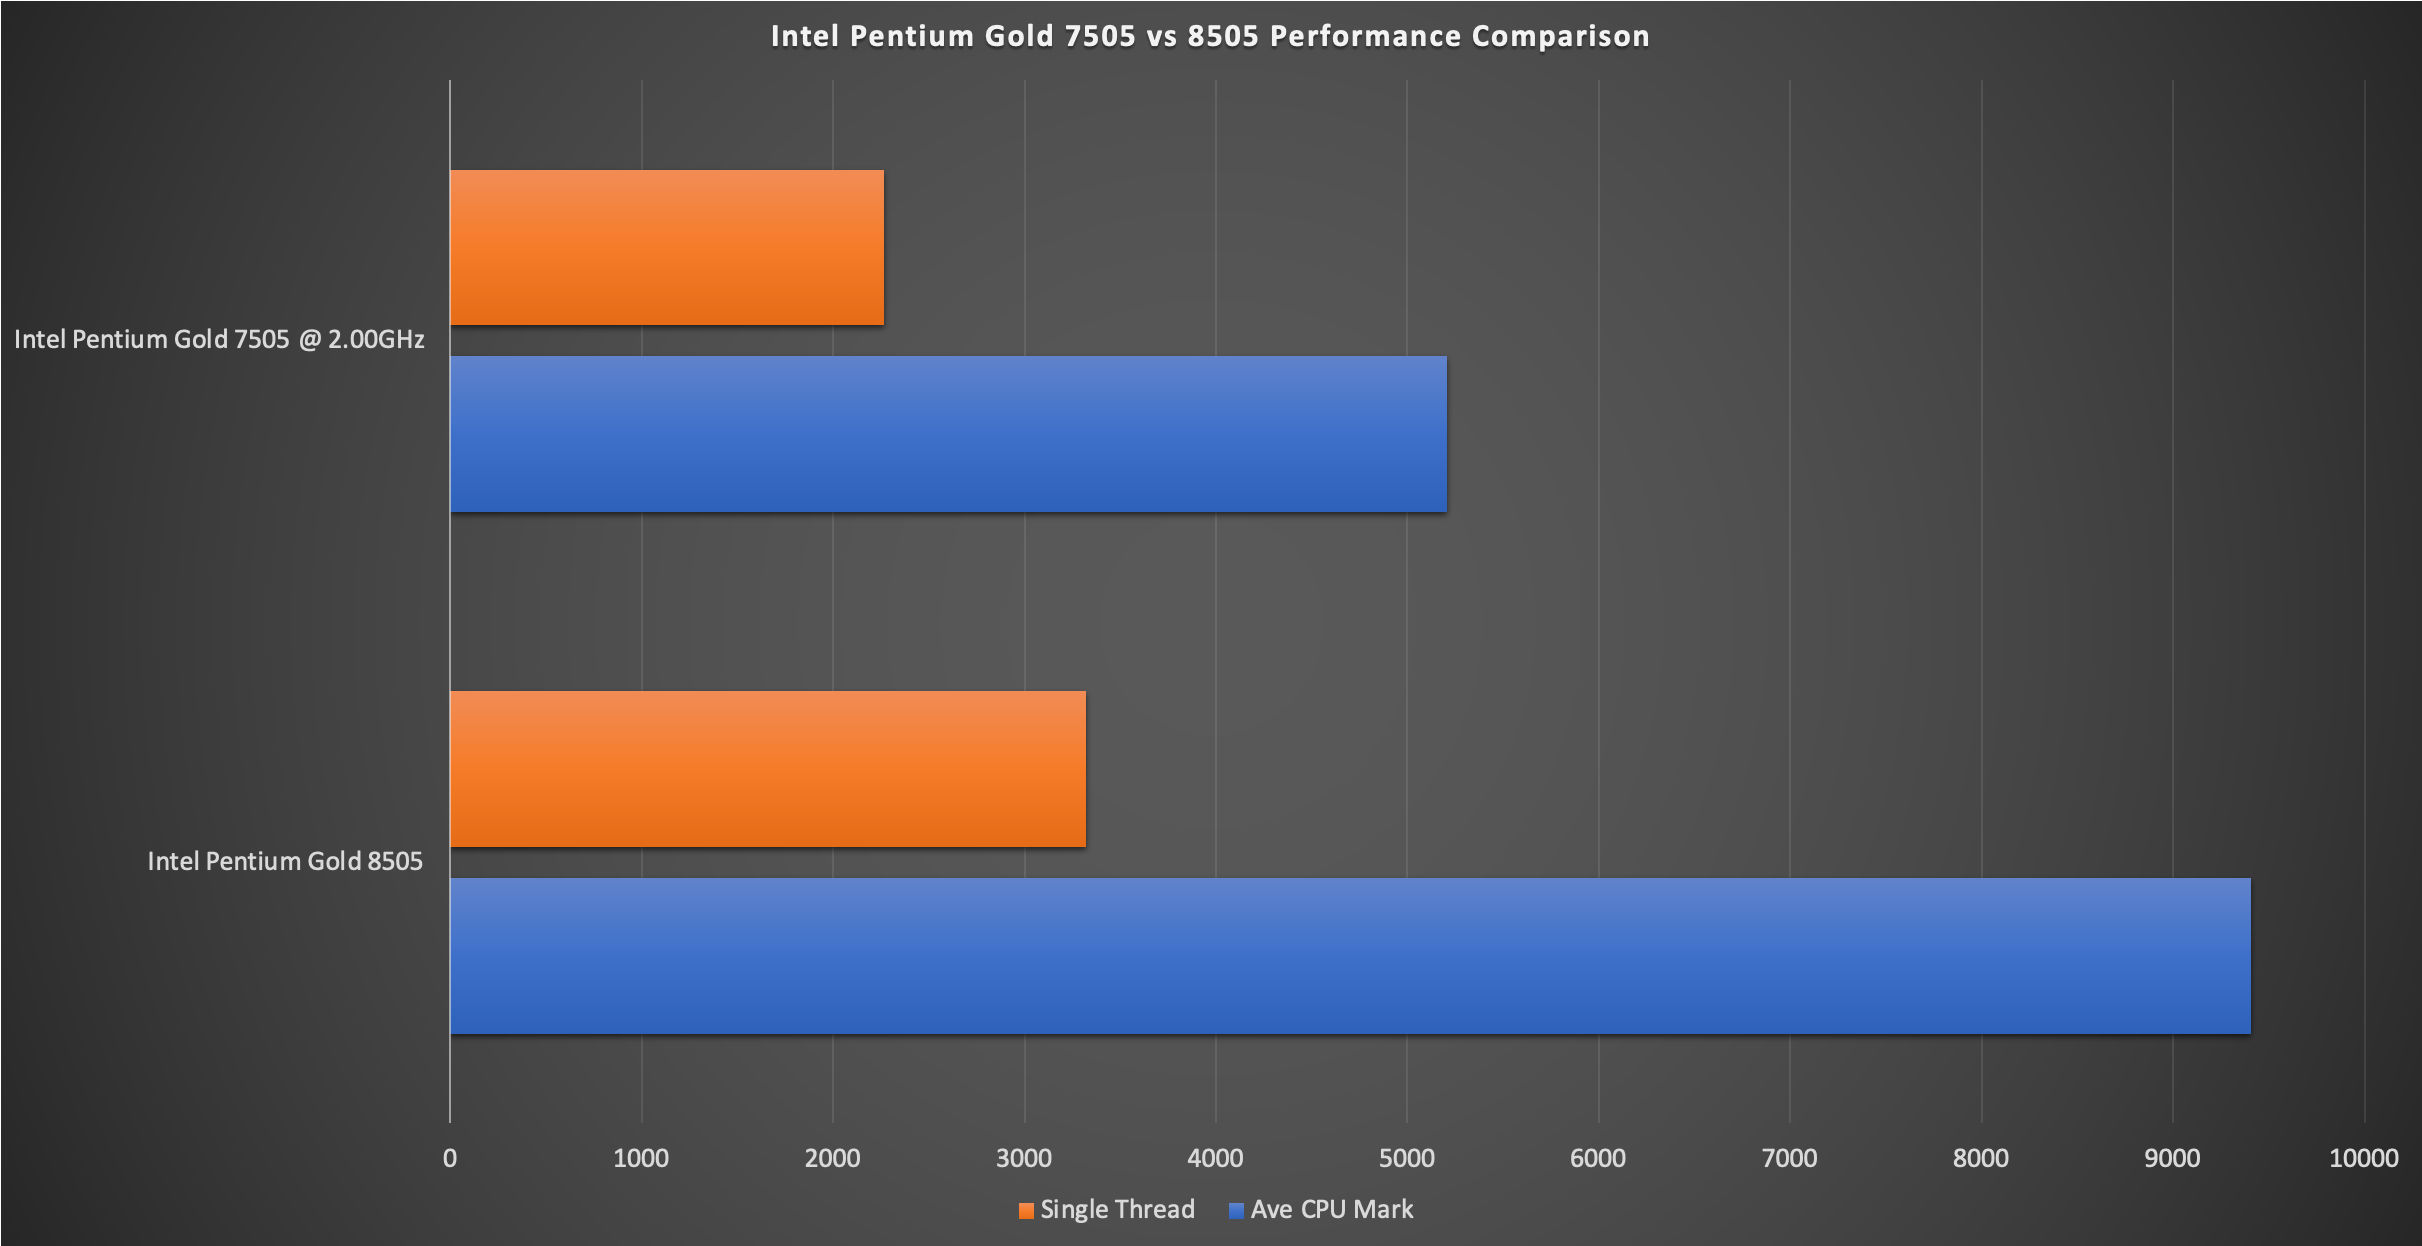 Intel Pentium Gold 7505 v 8505